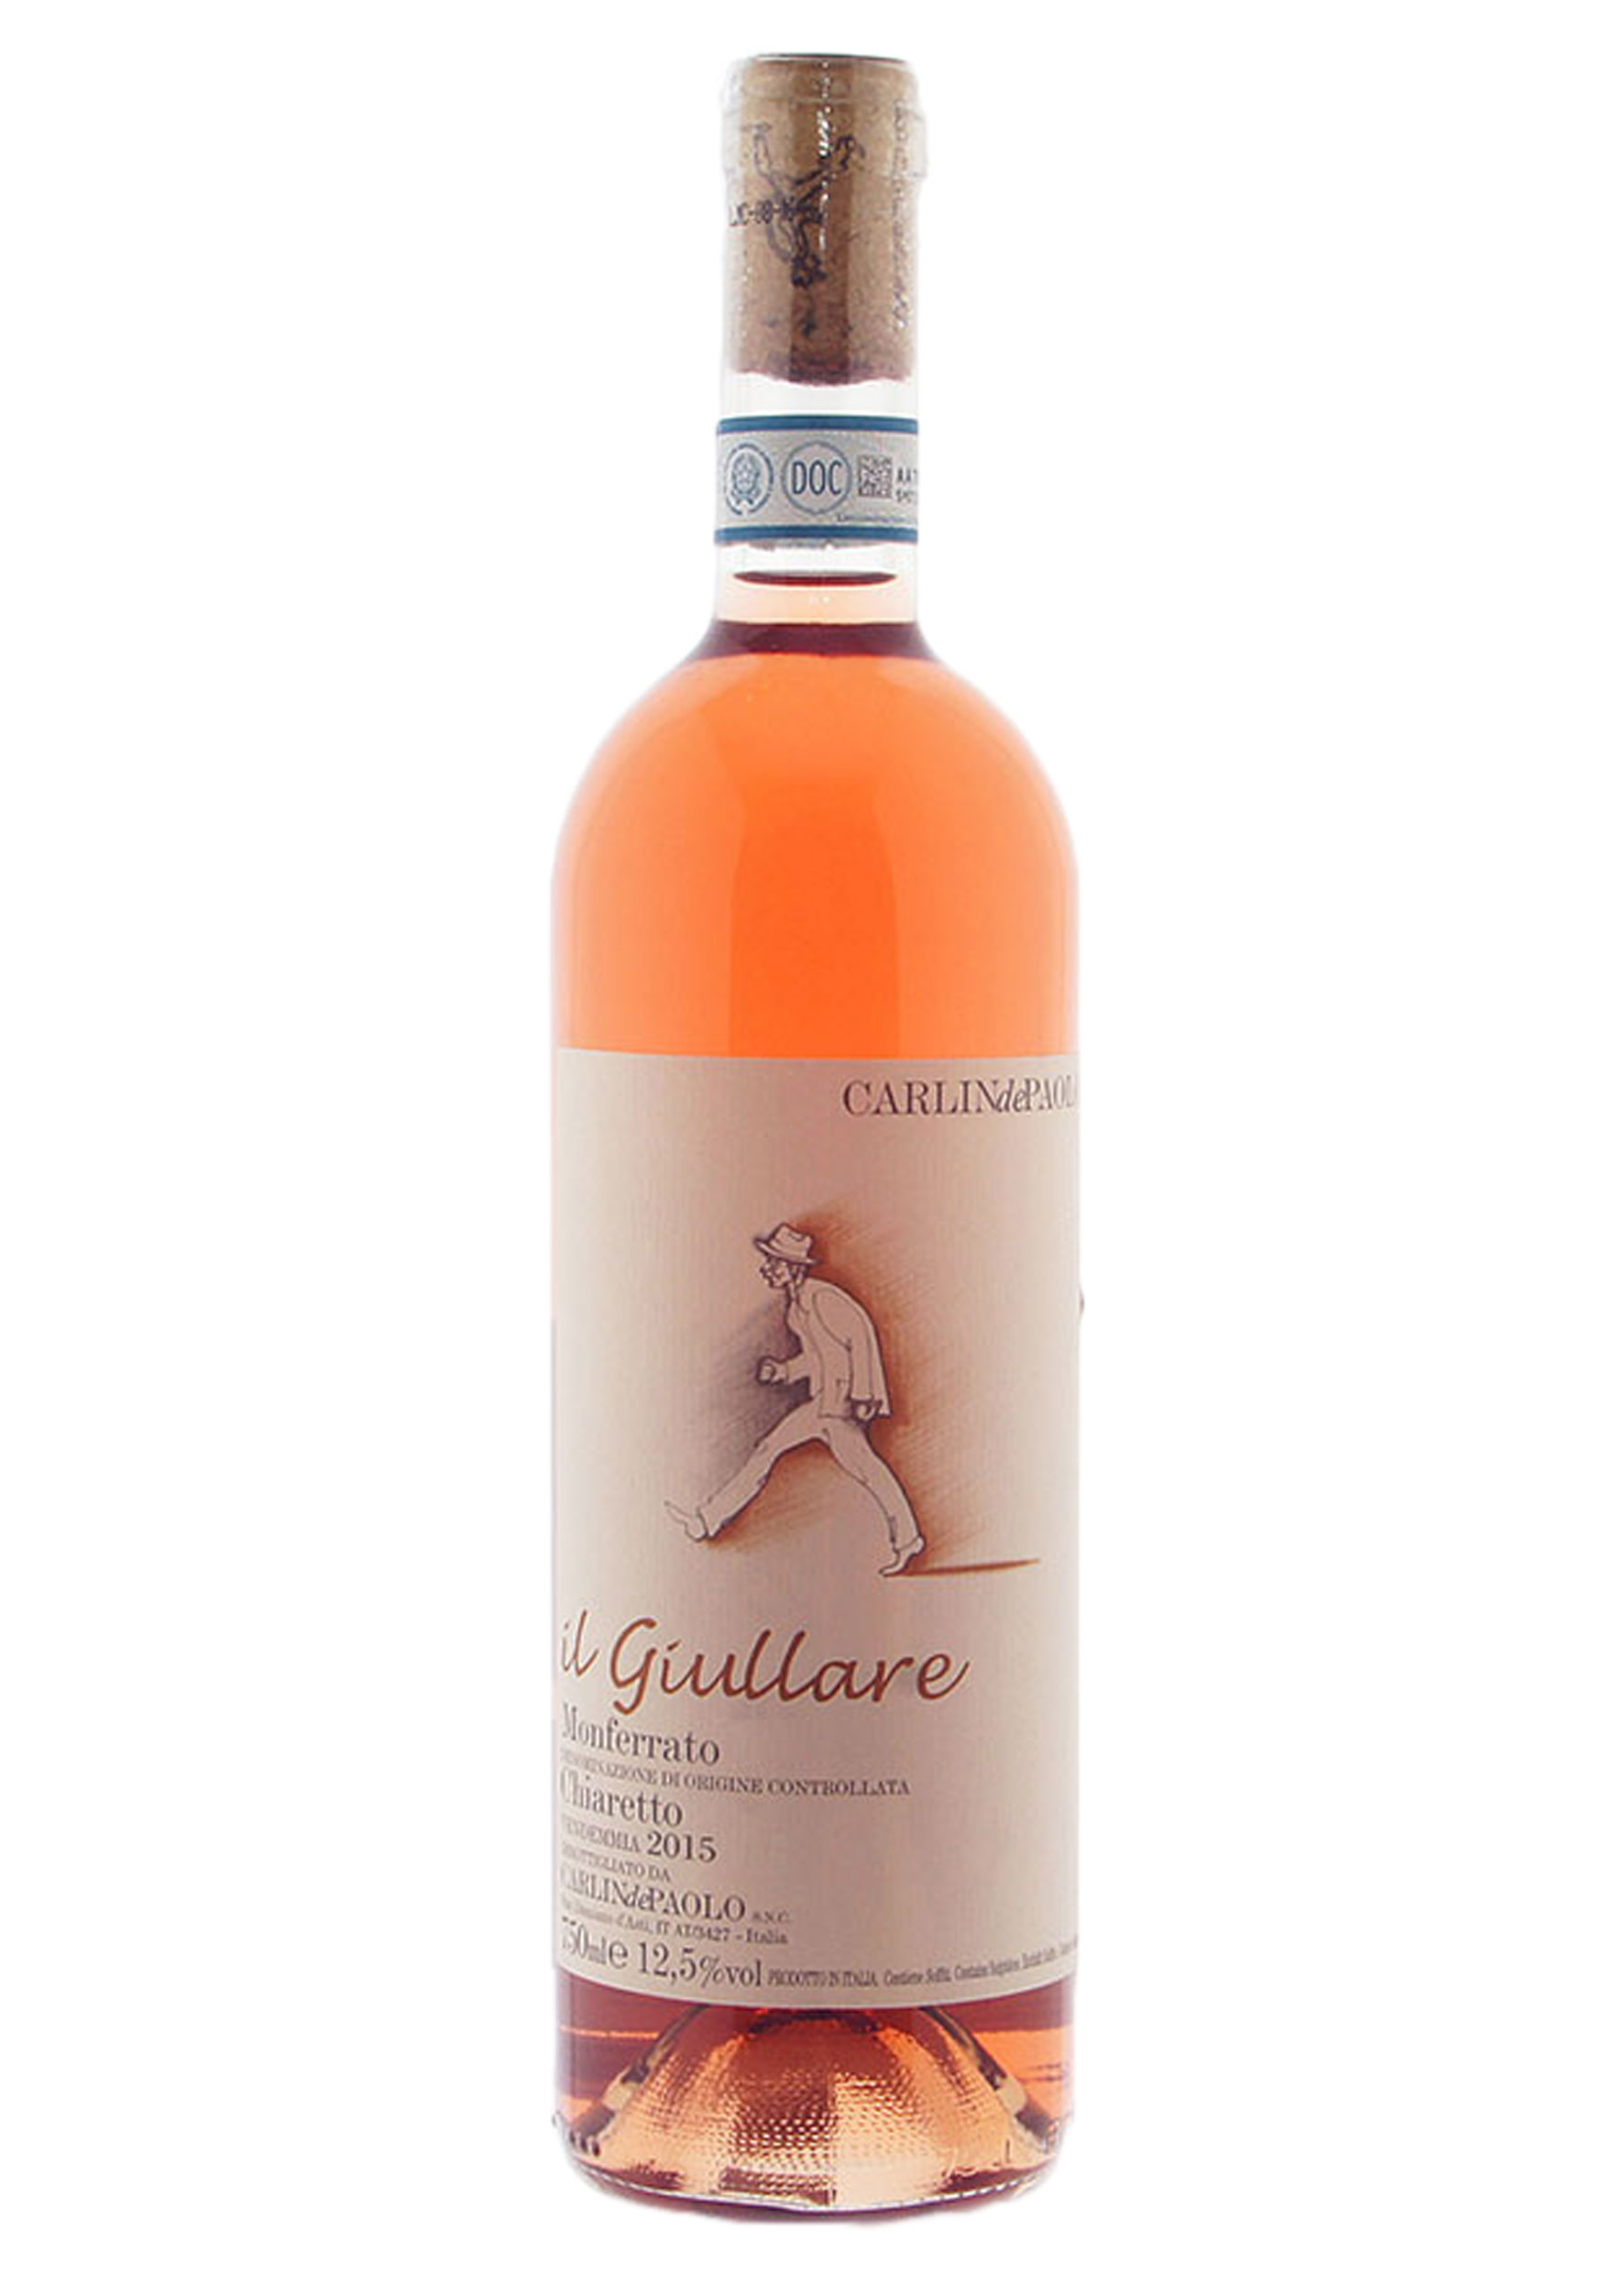 Иль Джюлларе Карлин де Паоло 2015 г. розовое сухое 0,75 л.